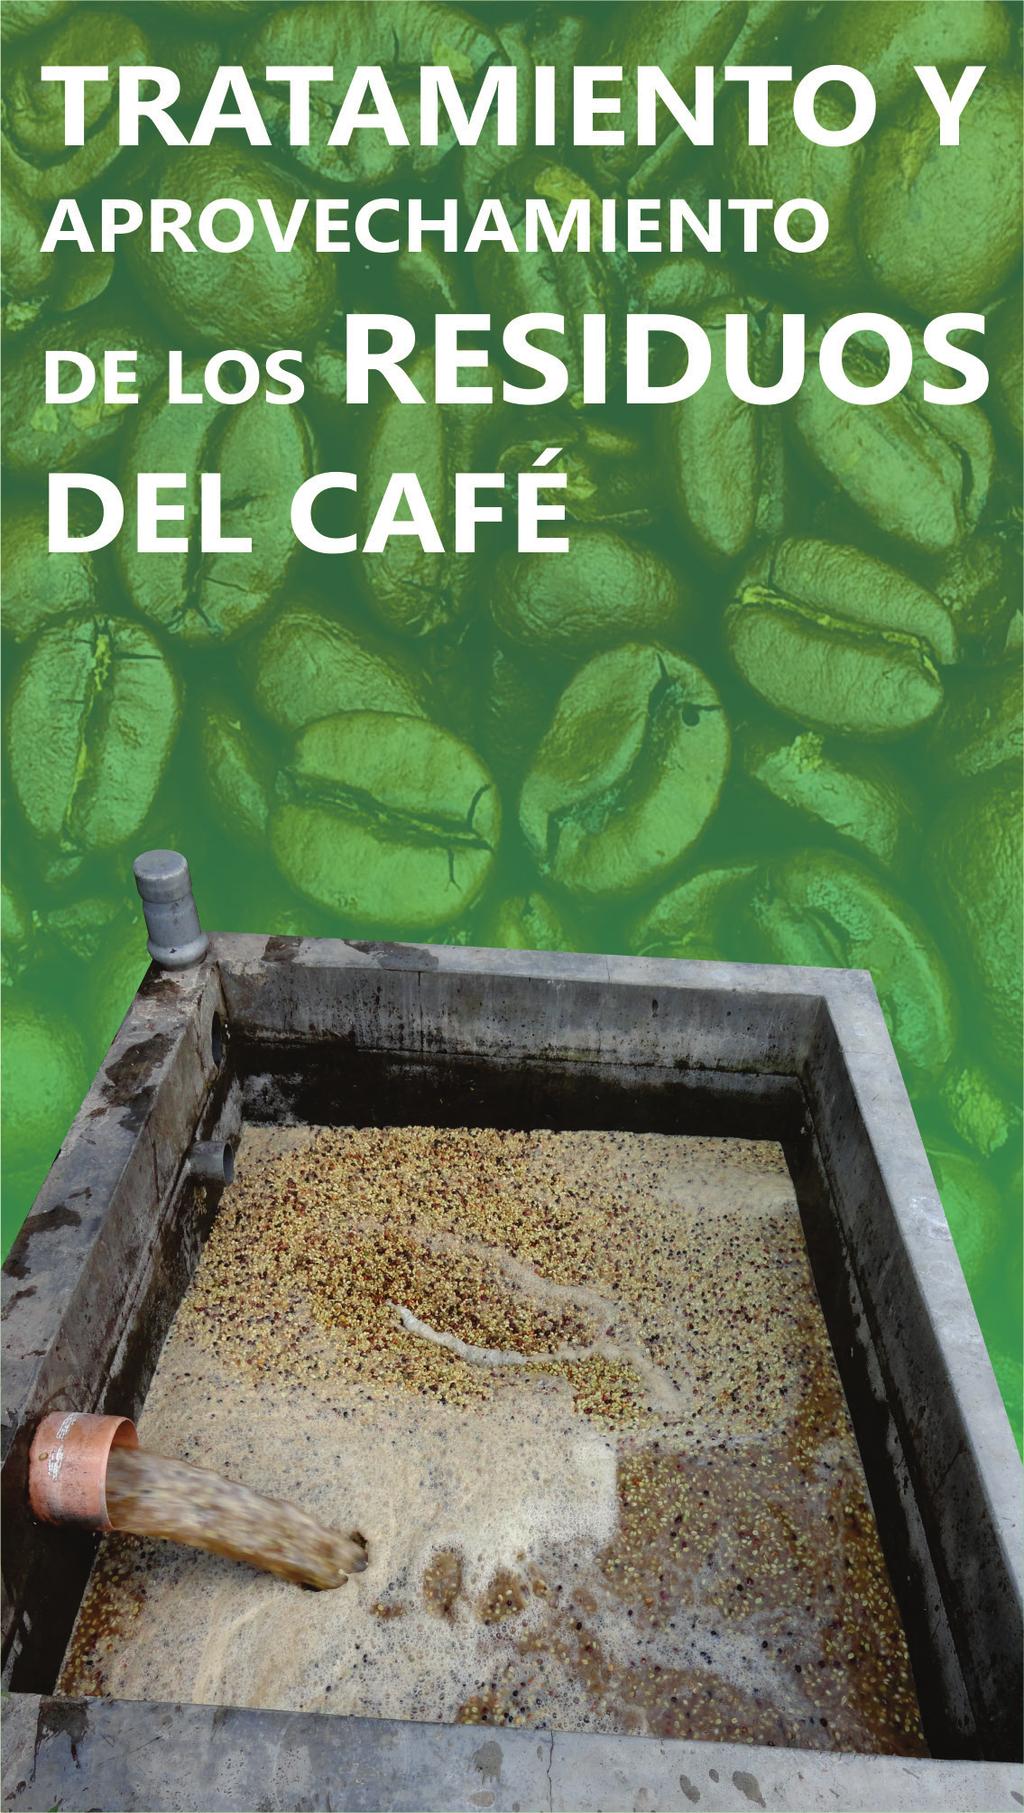 Tecnologías Apropiadas para la Caficultura EL CAFÉ El café es una bebida que se obtiene de la infusión de las semillas tostadas y molidas de las plantas del café (Coffea).